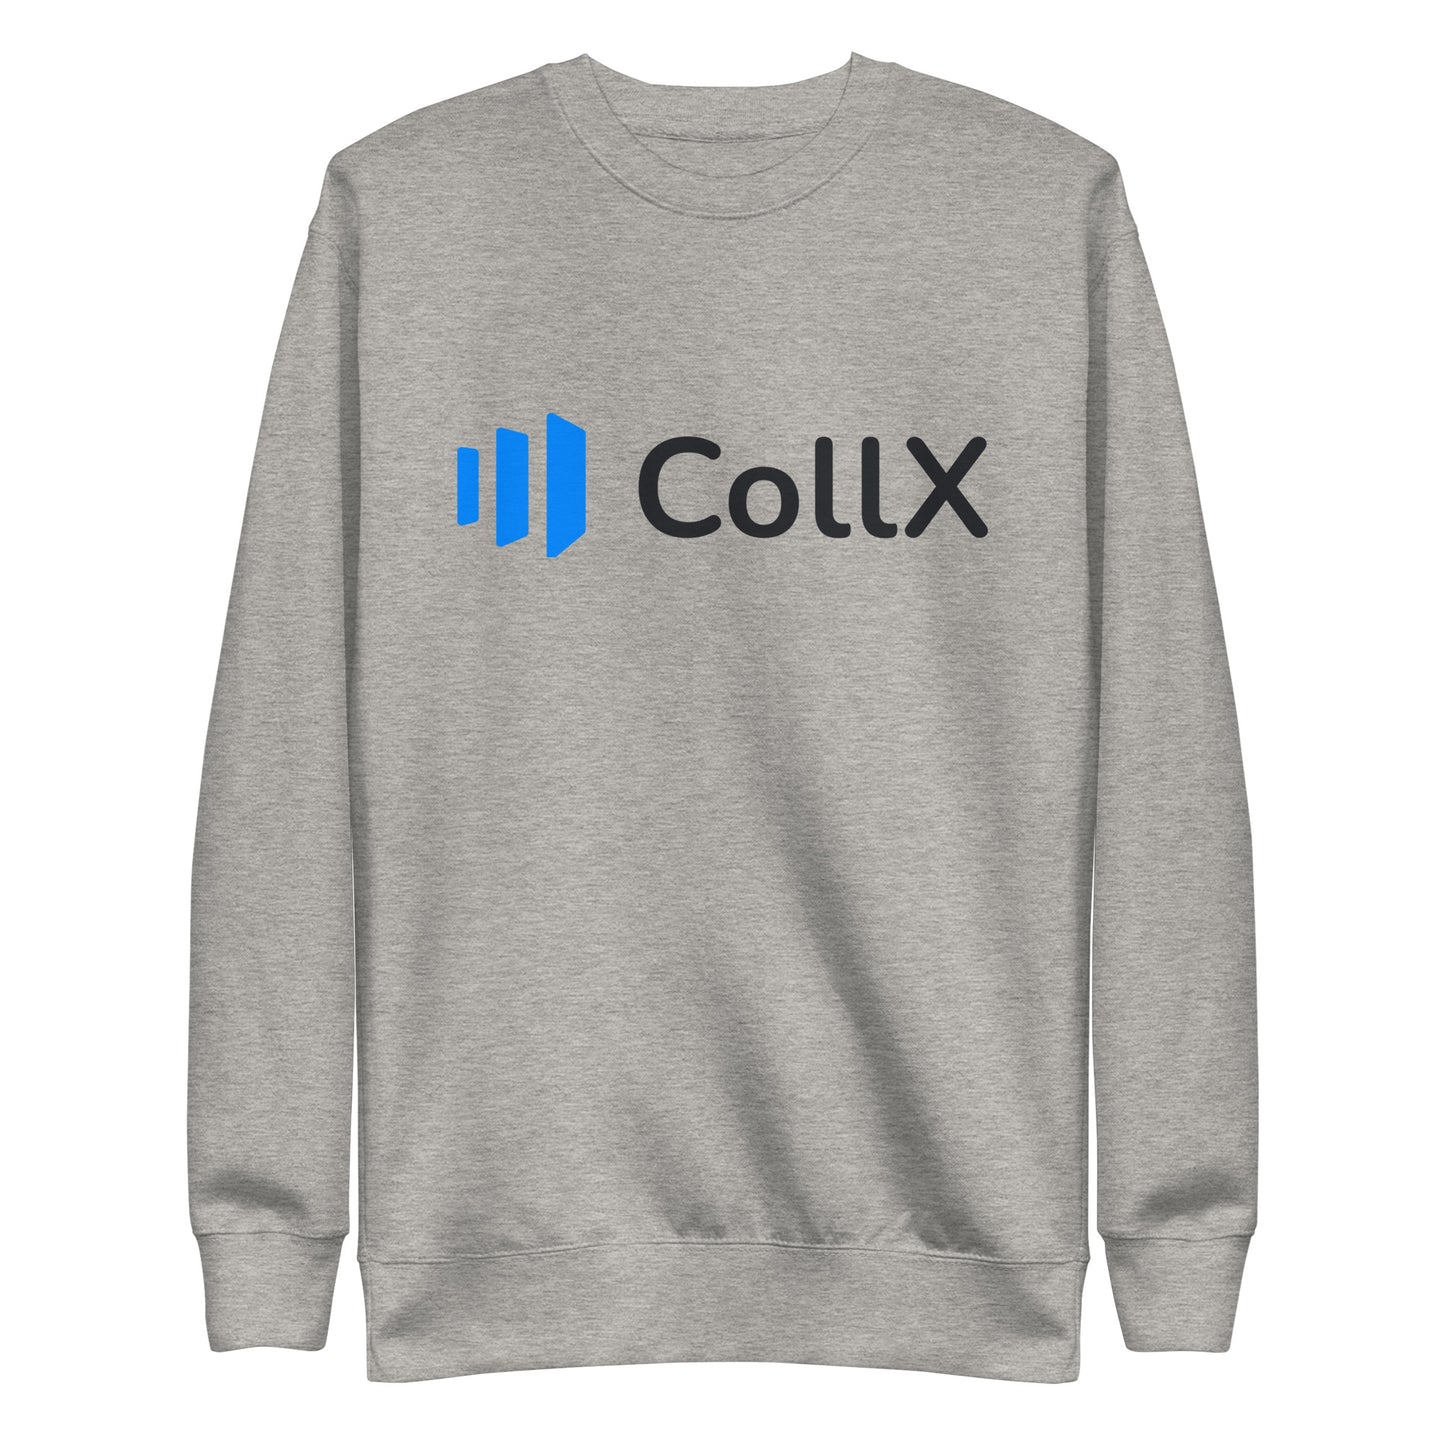 CollX Unisex Premium Sweatshirt